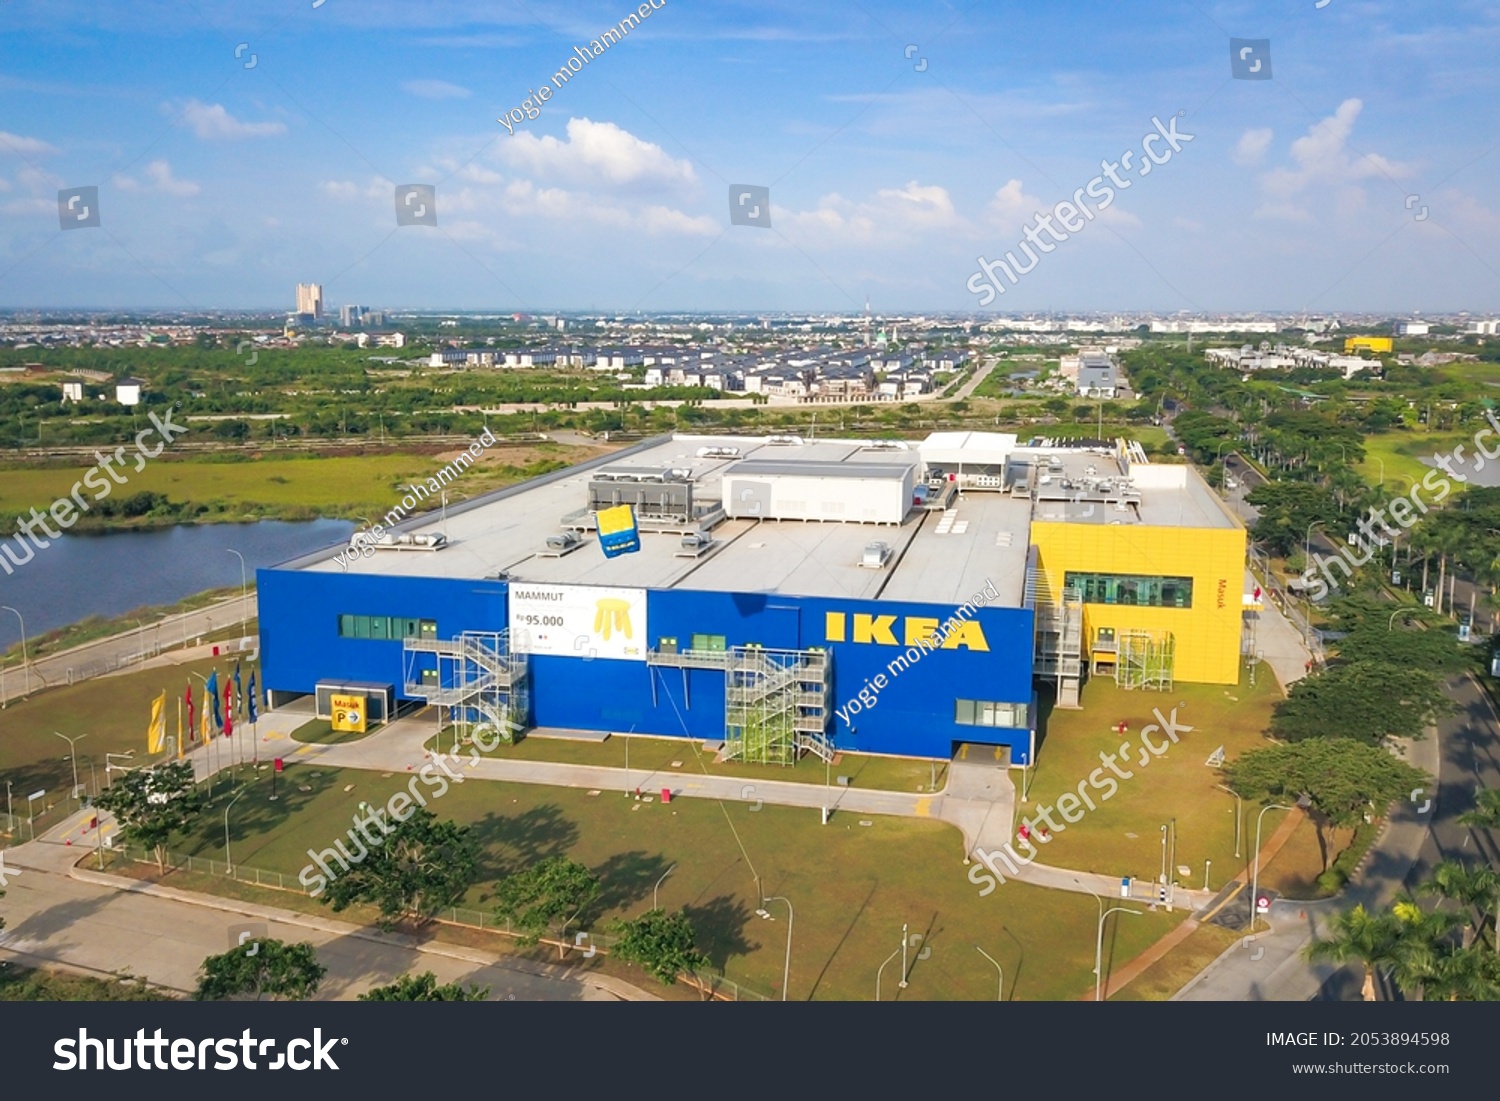 Ikea indonesia